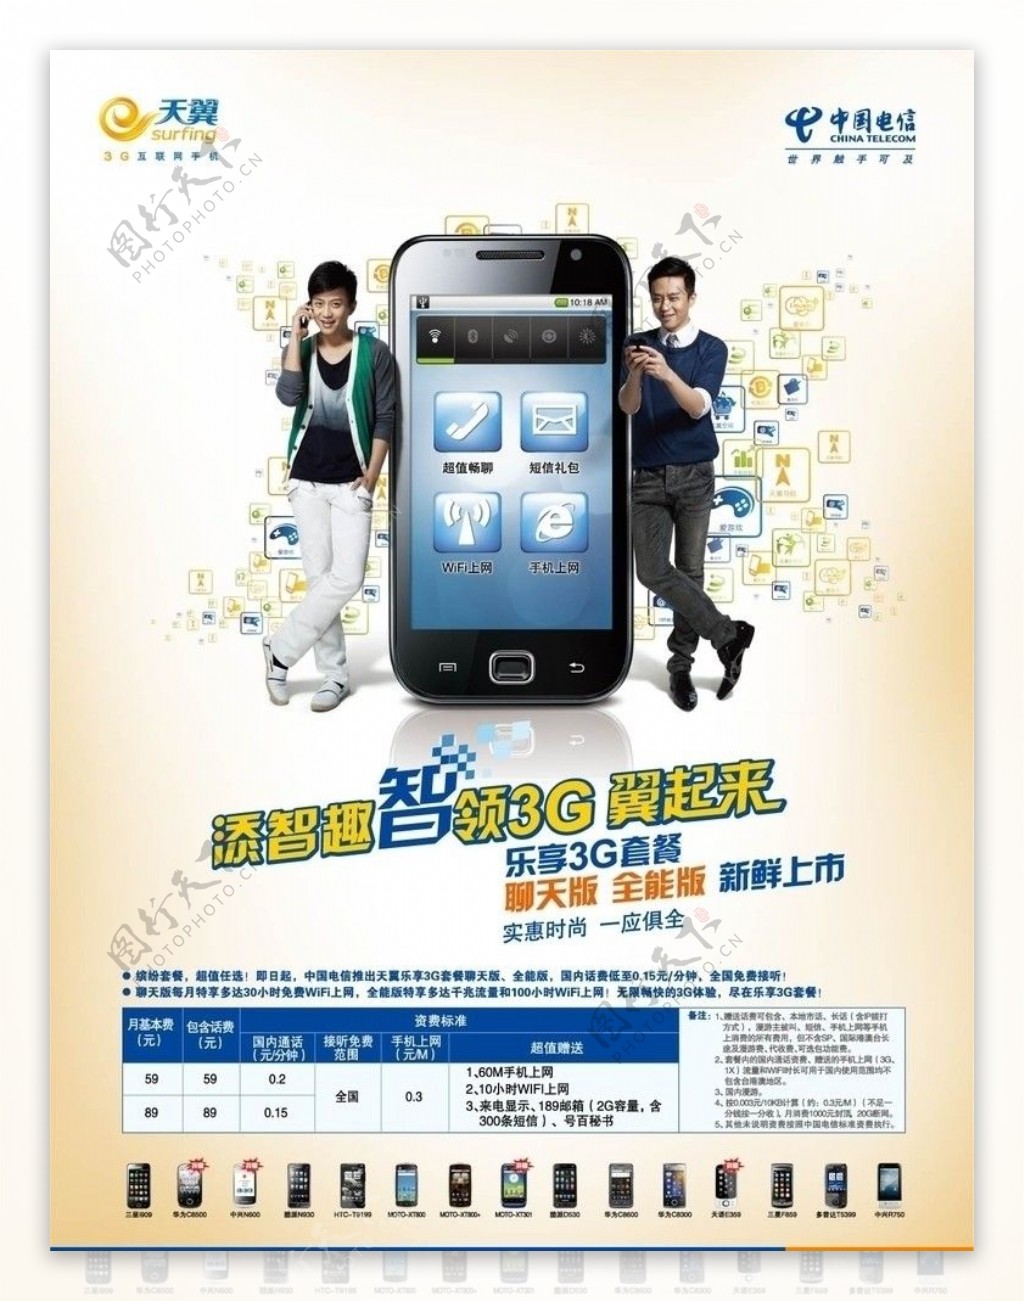 中国电信乐享3G宣传画面图片